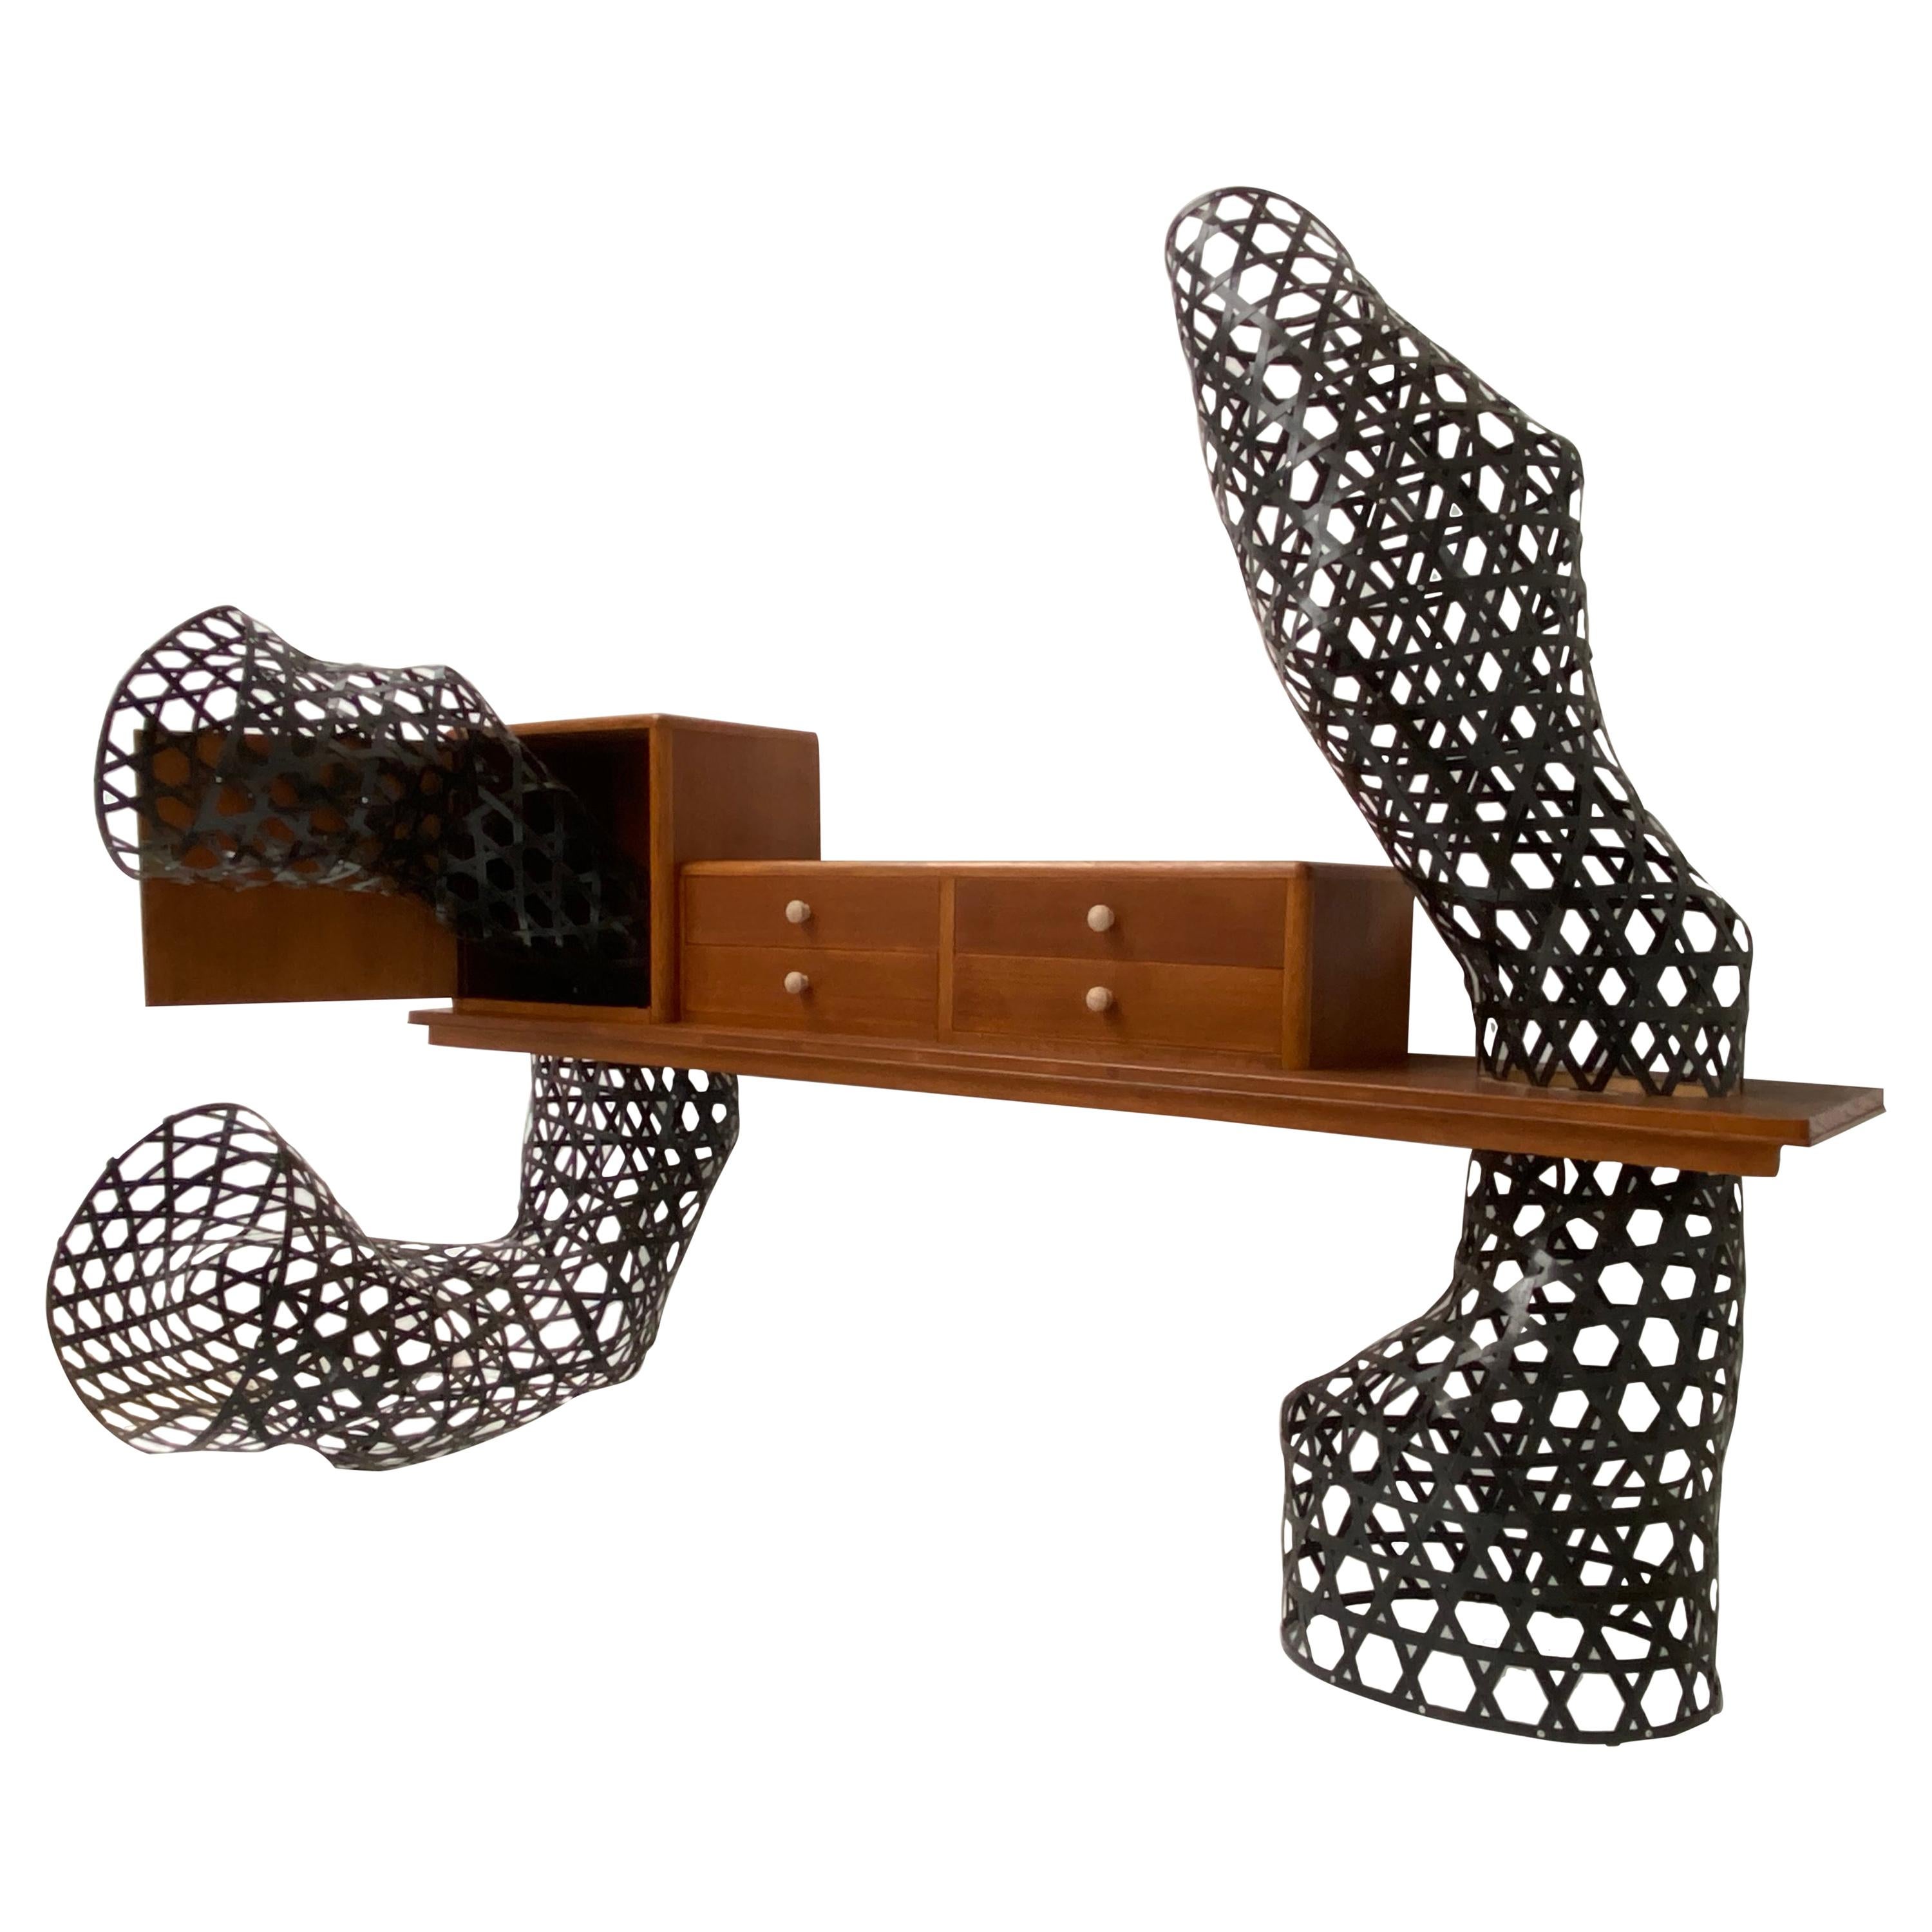 Case Study Prototype "Weaving" by Atelier Tejo Remy & Rene Veenhuizen For Sale